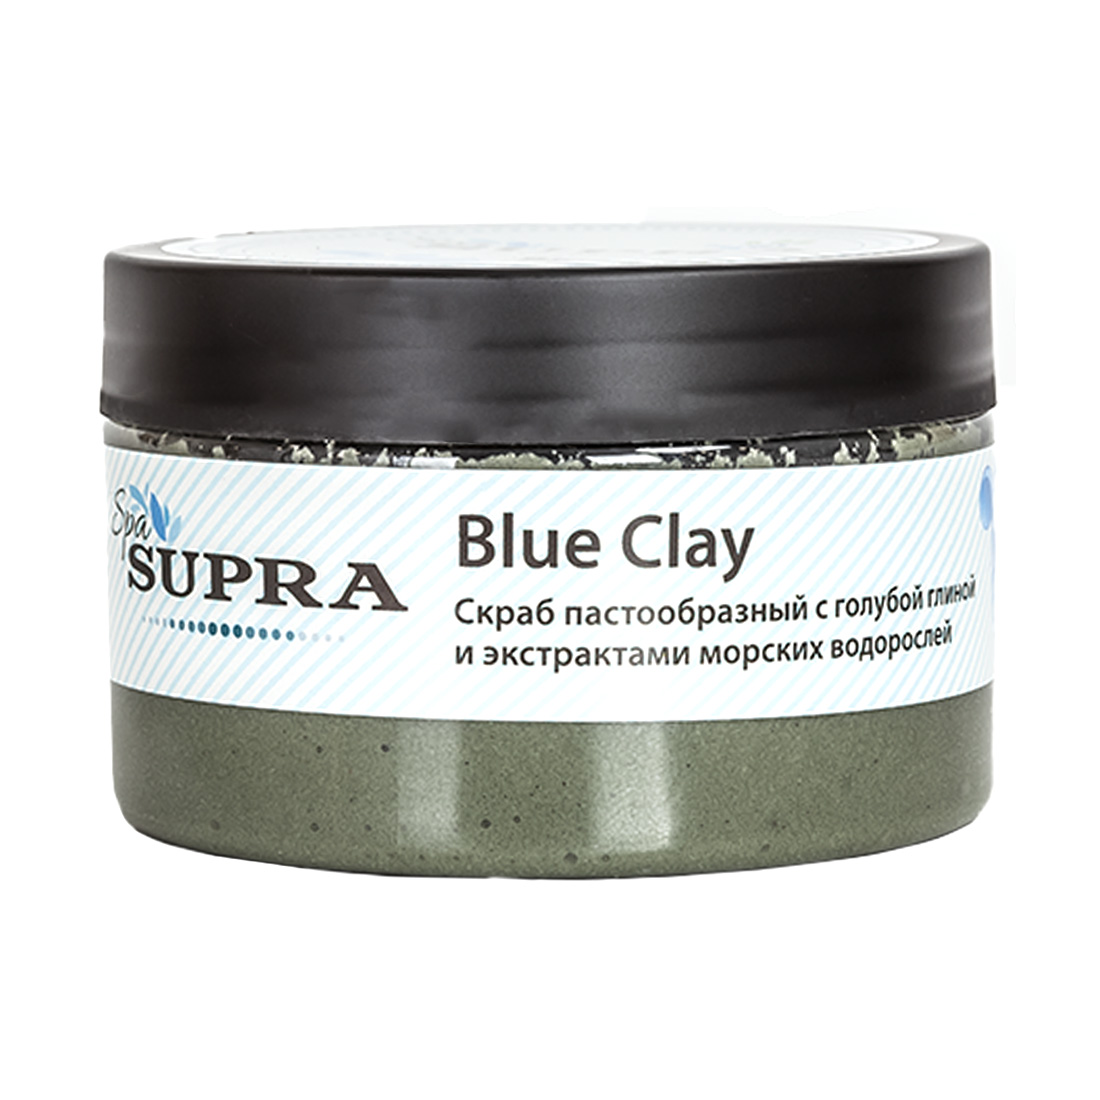 Картинка Скраб для тела с голубой глиной и экстрактом морских водорослей 320 гр. Supra SPA по разумной цене купить в интернет магазине mall.su